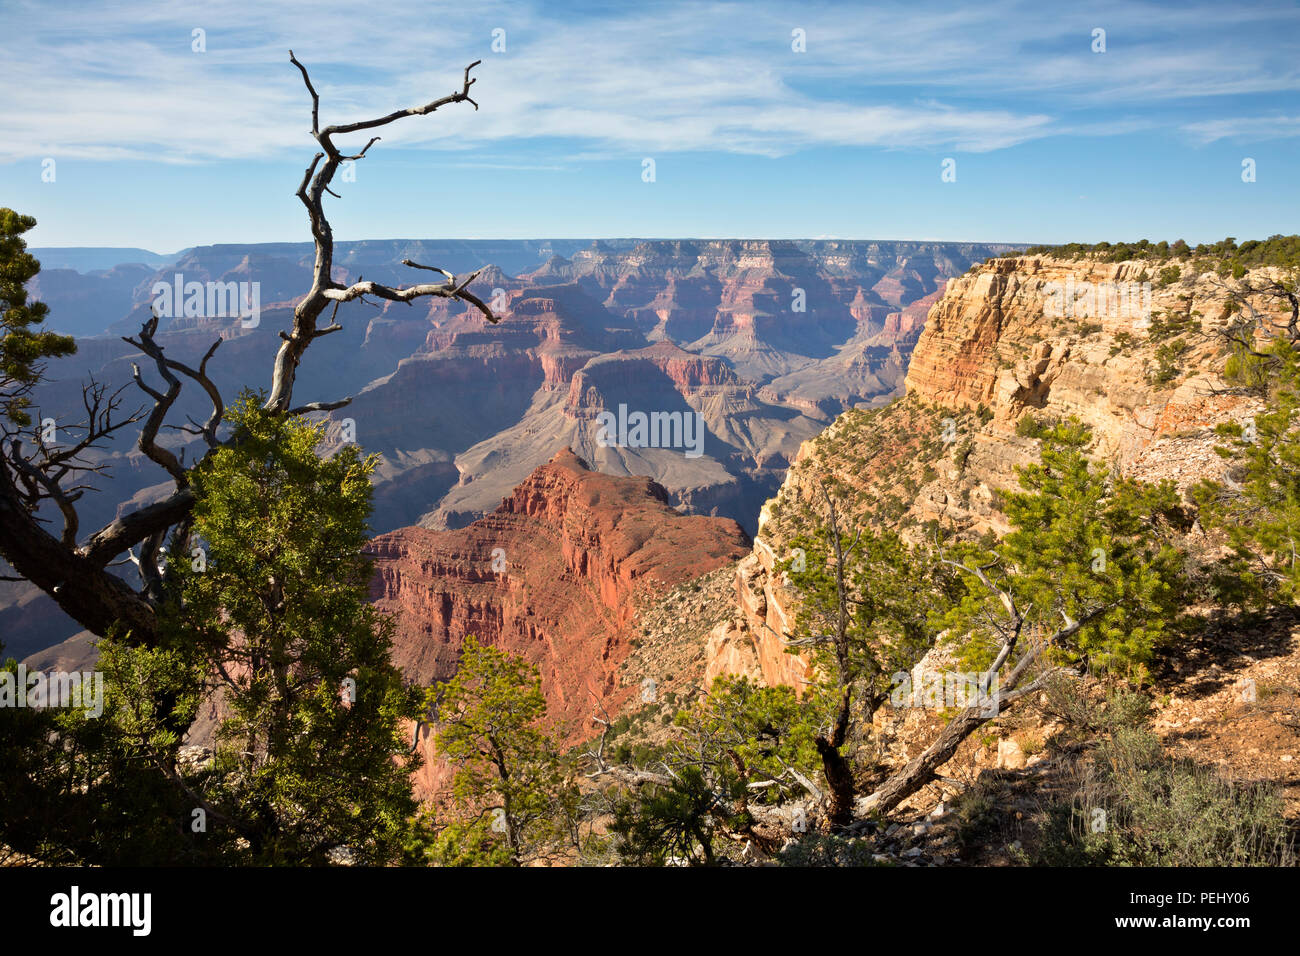 AZ00270-00...ARIZONA - Vista del fiume Colorado da Rim Trail vicino l'Abisso, situato lungo la strada eremita nel Parco Nazionale del Grand Canyon. Foto Stock